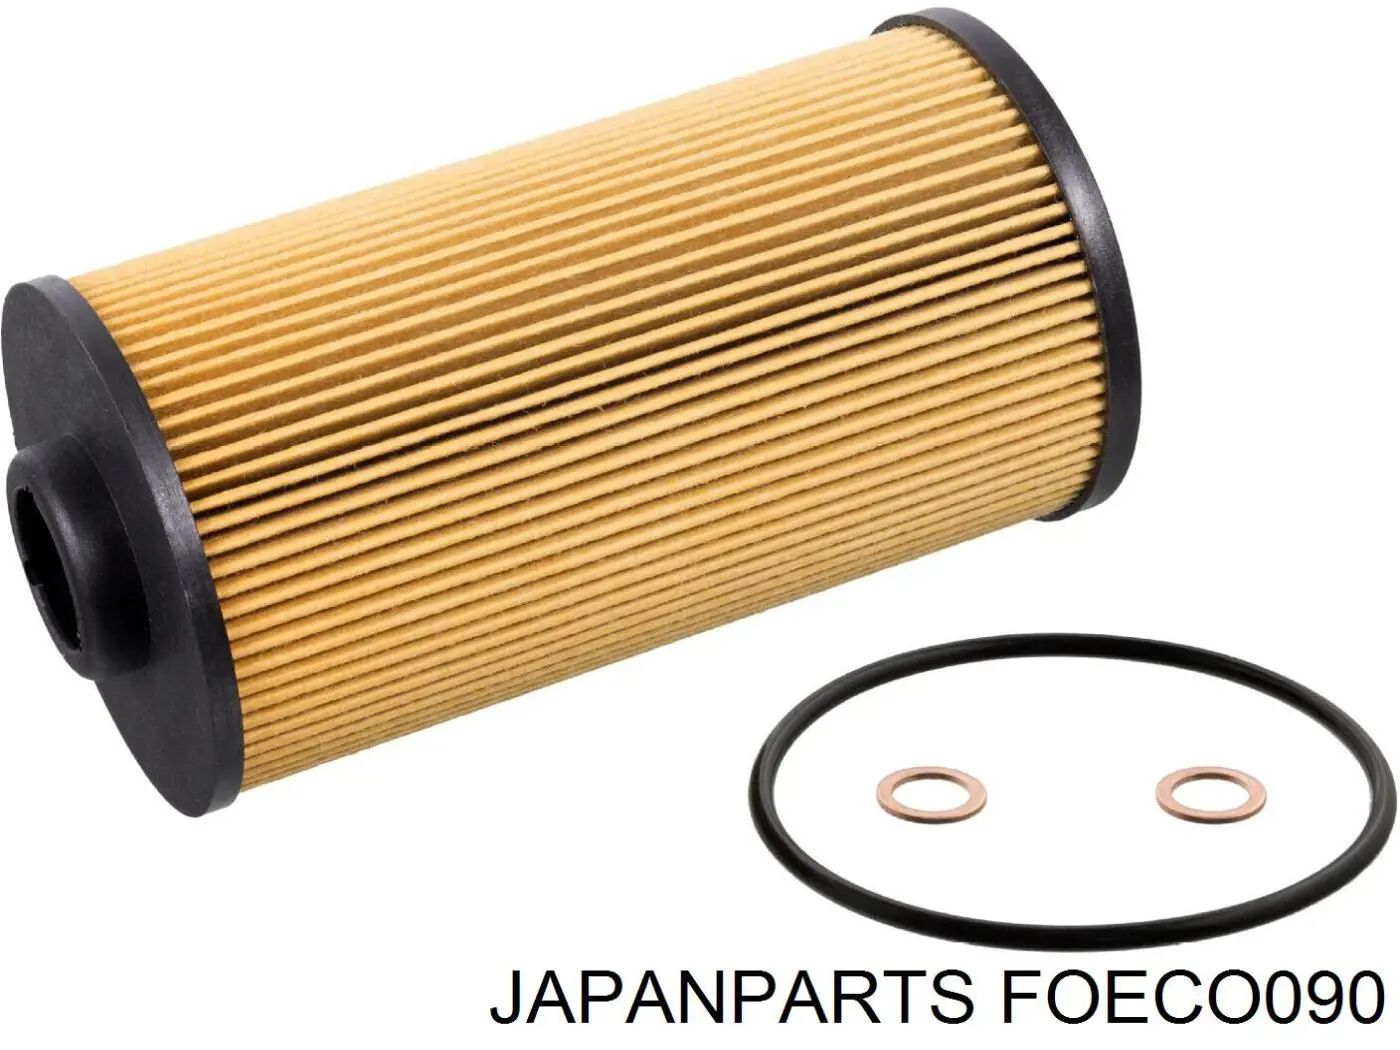 FOECO090 Japan Parts filtro de aceite